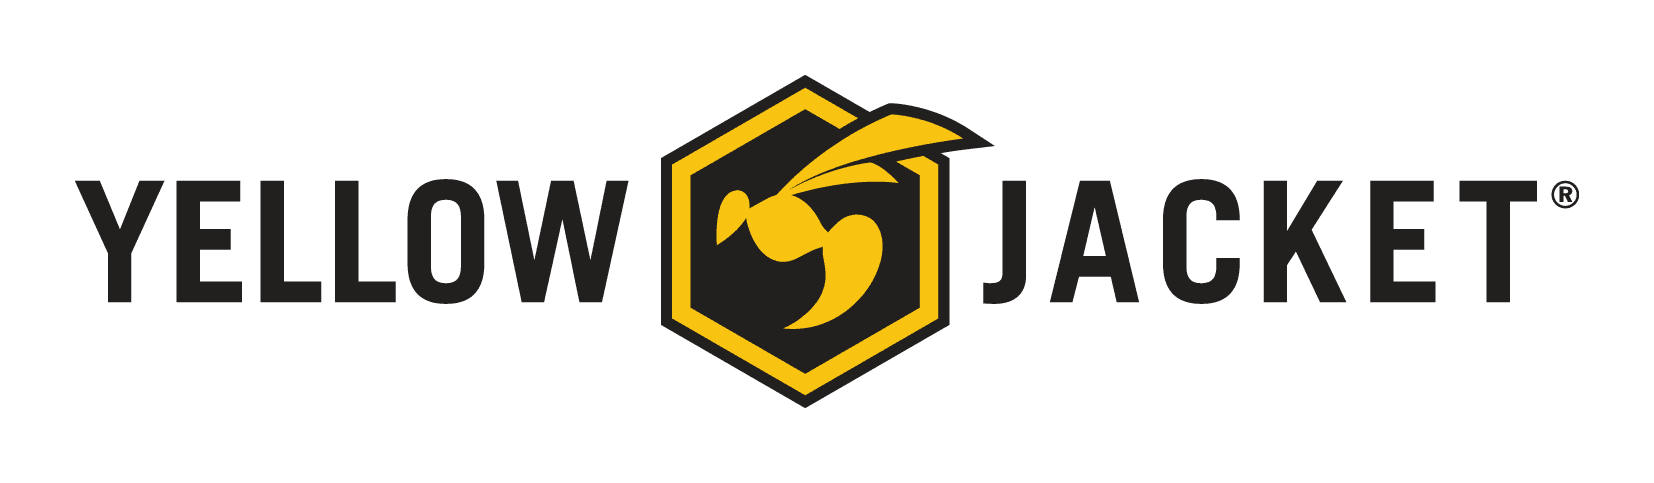 Yellow Jacket Friction Reduction Pile Sleeves Logo